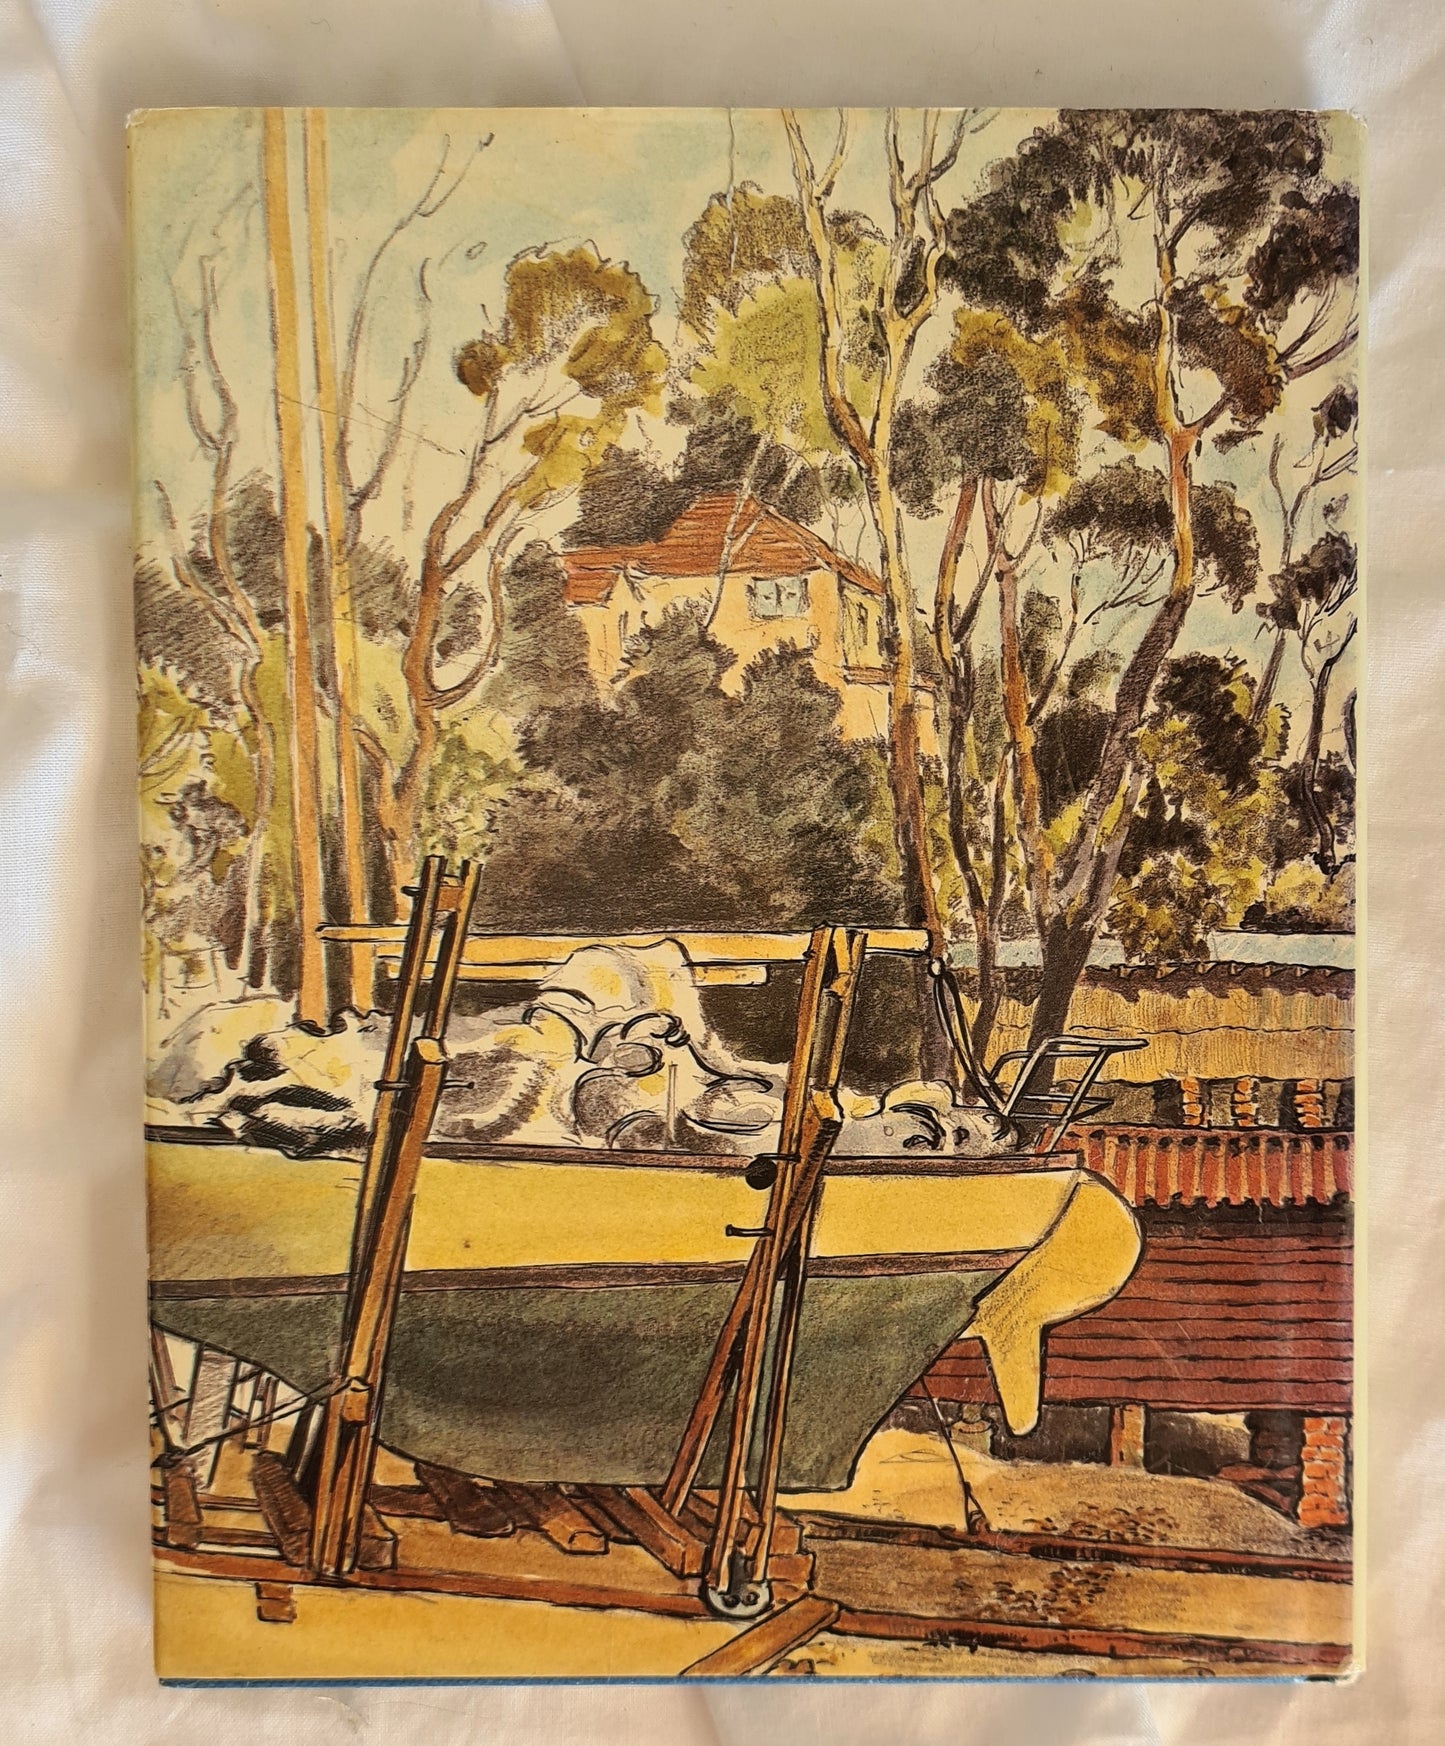 Waterways of Sydney by Cedric Emanuel and Geoffrey Dutton